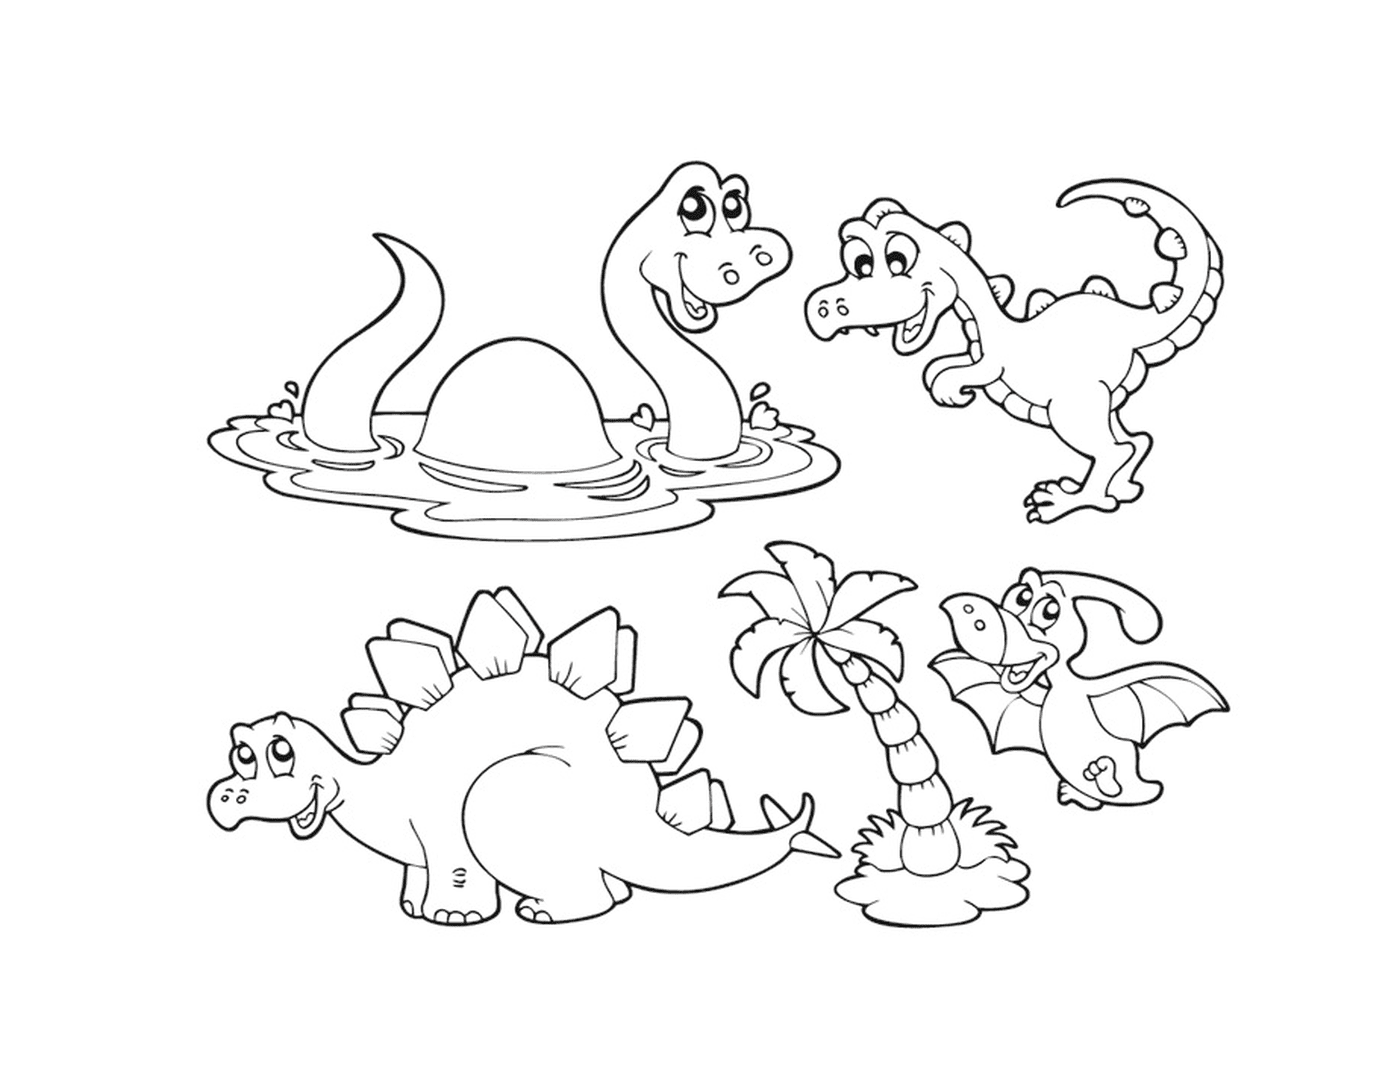  Группа динозавров, сидящих в воде 